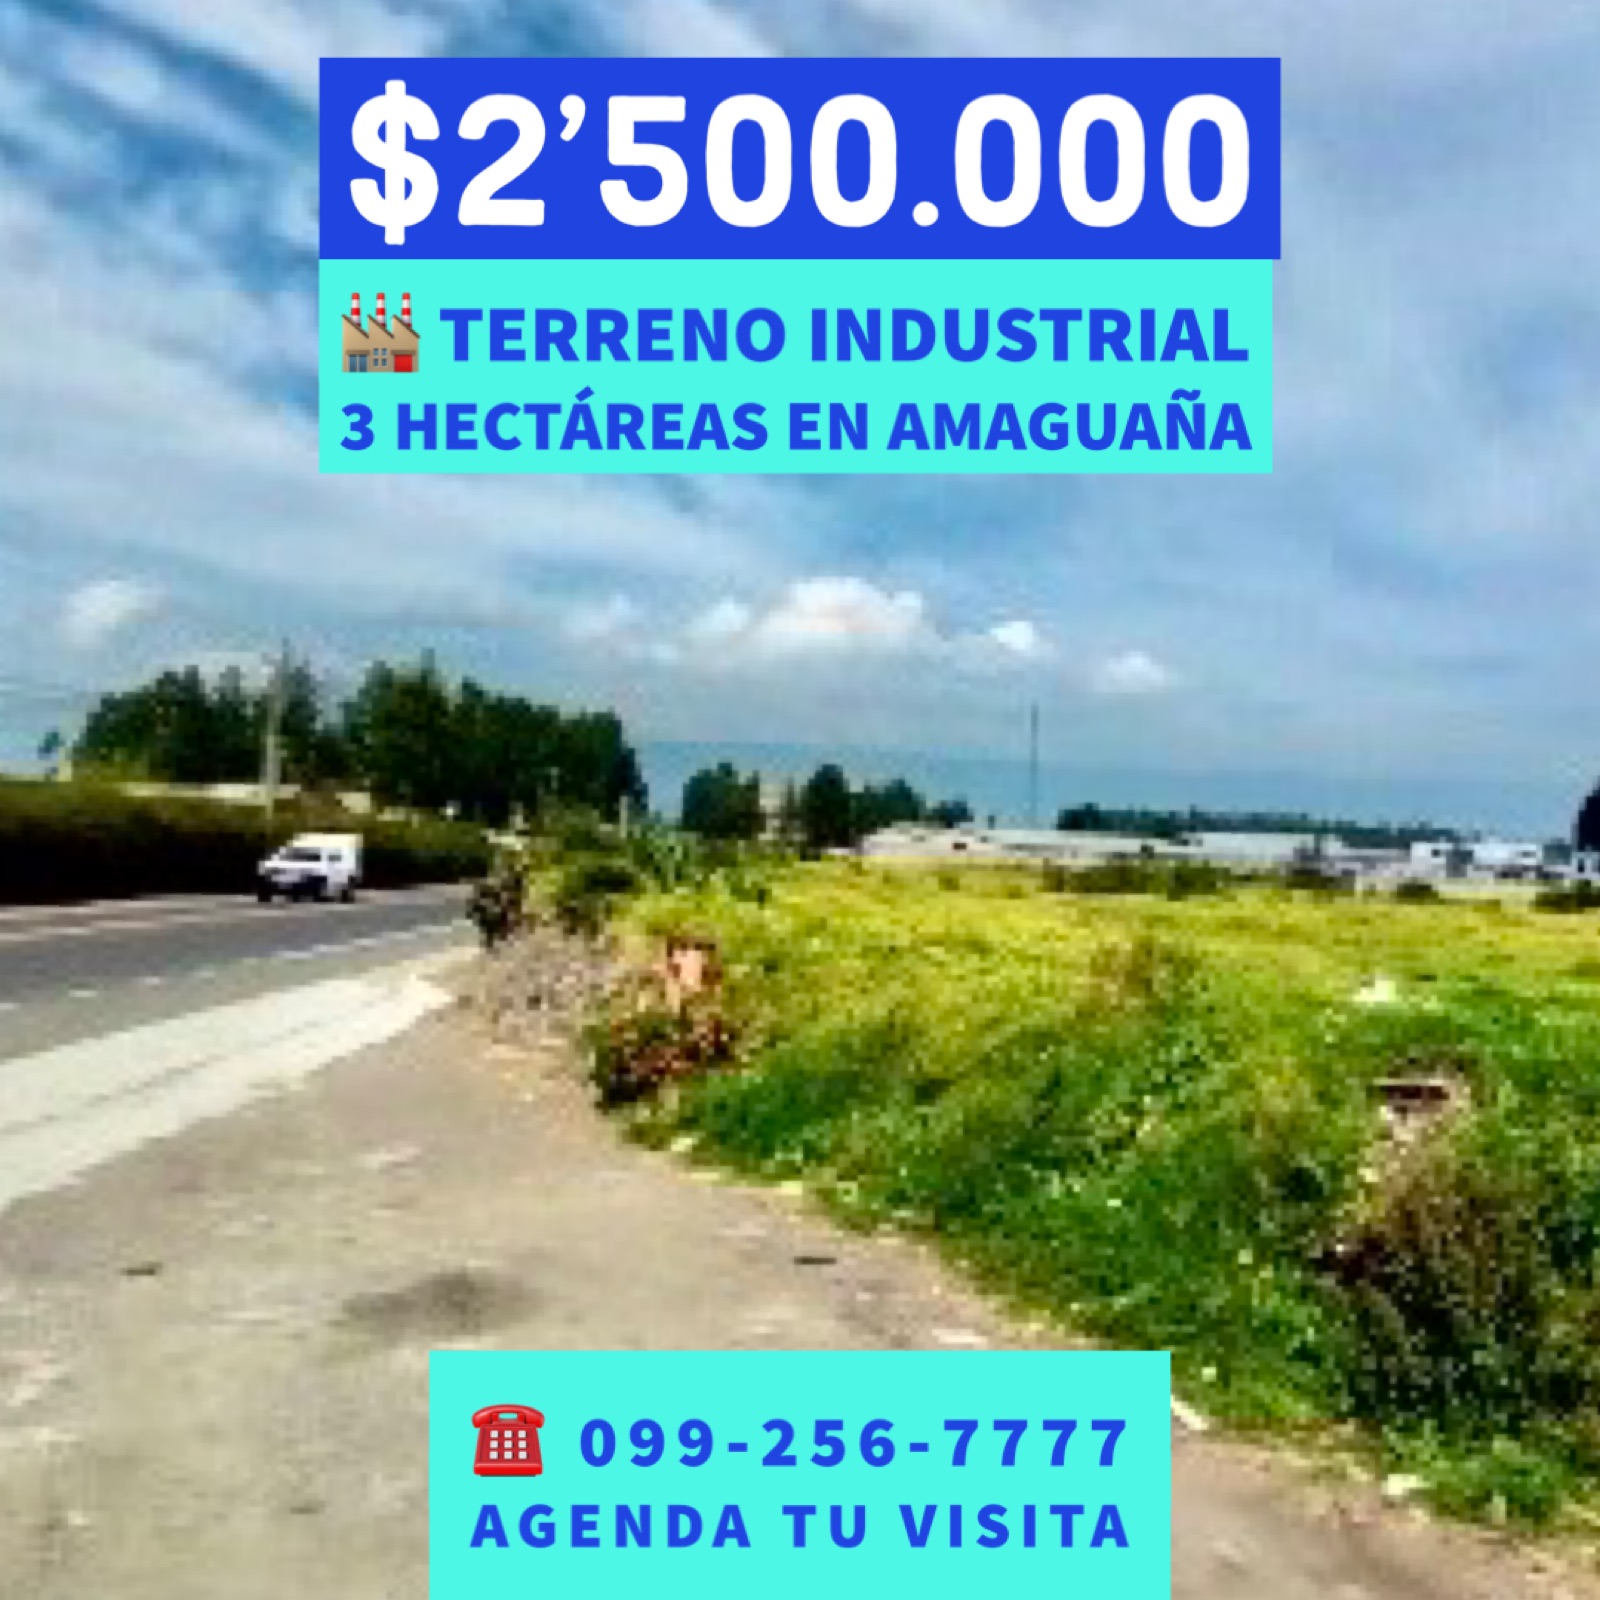 Terreno industrial en Amaguaña, 3 hectáreas, a $78 el m2